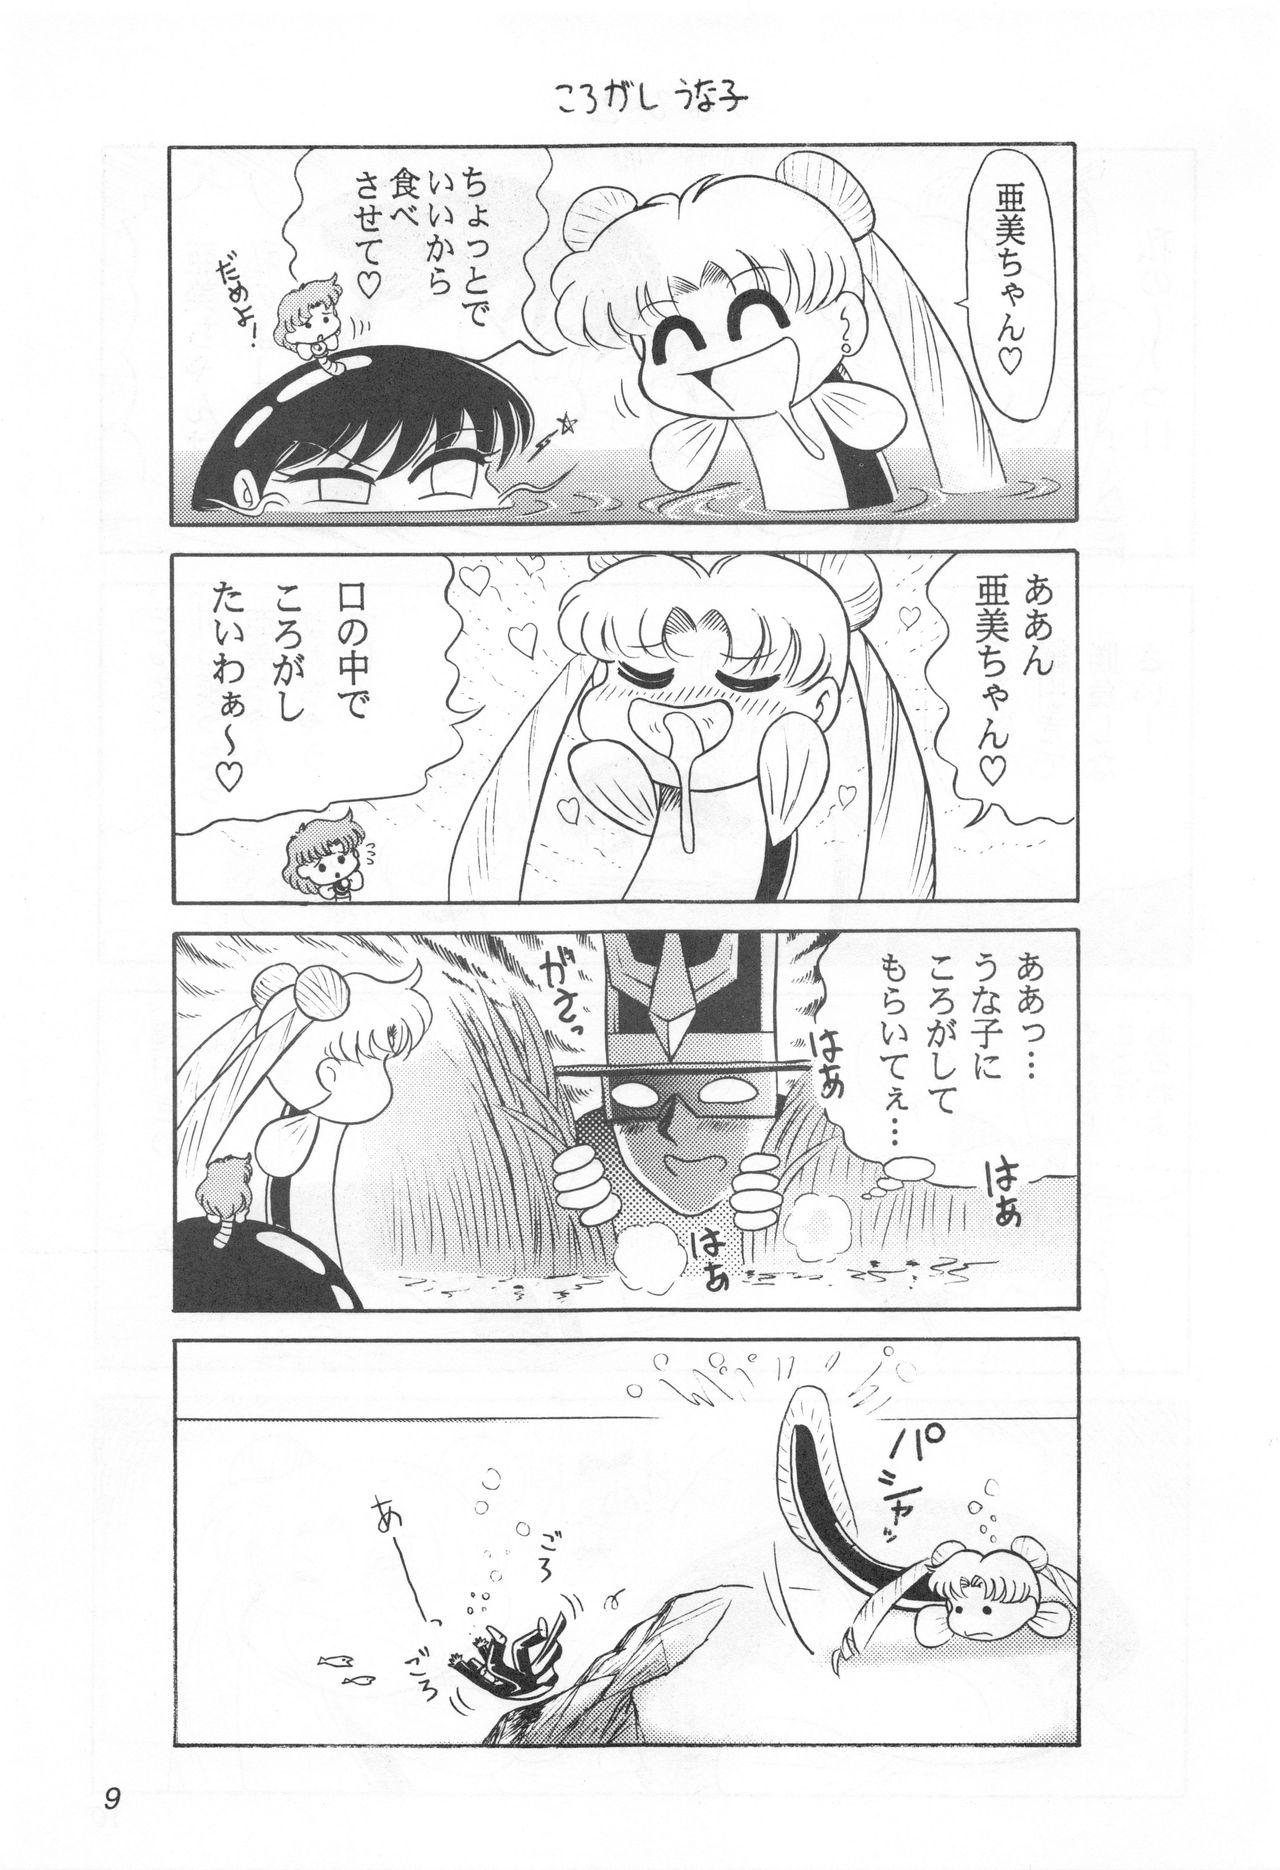 Pink Pussy Mimizu no Ami-chan Vol. 2 - Sailor moon Flash - Page 8